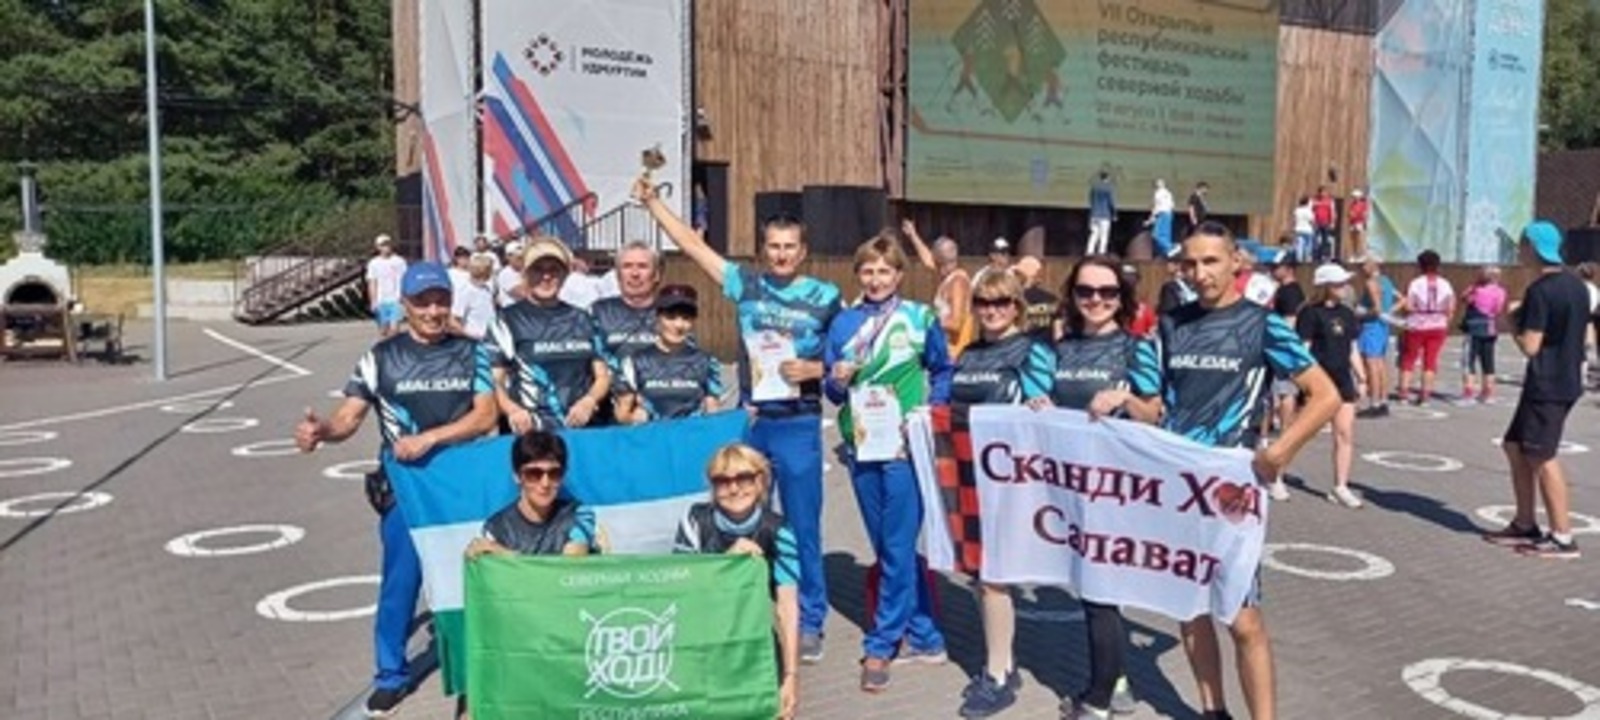 Салаватские североходцы вошли в тройку сильнейших спортсменов на Кубке России по северной ходьбе